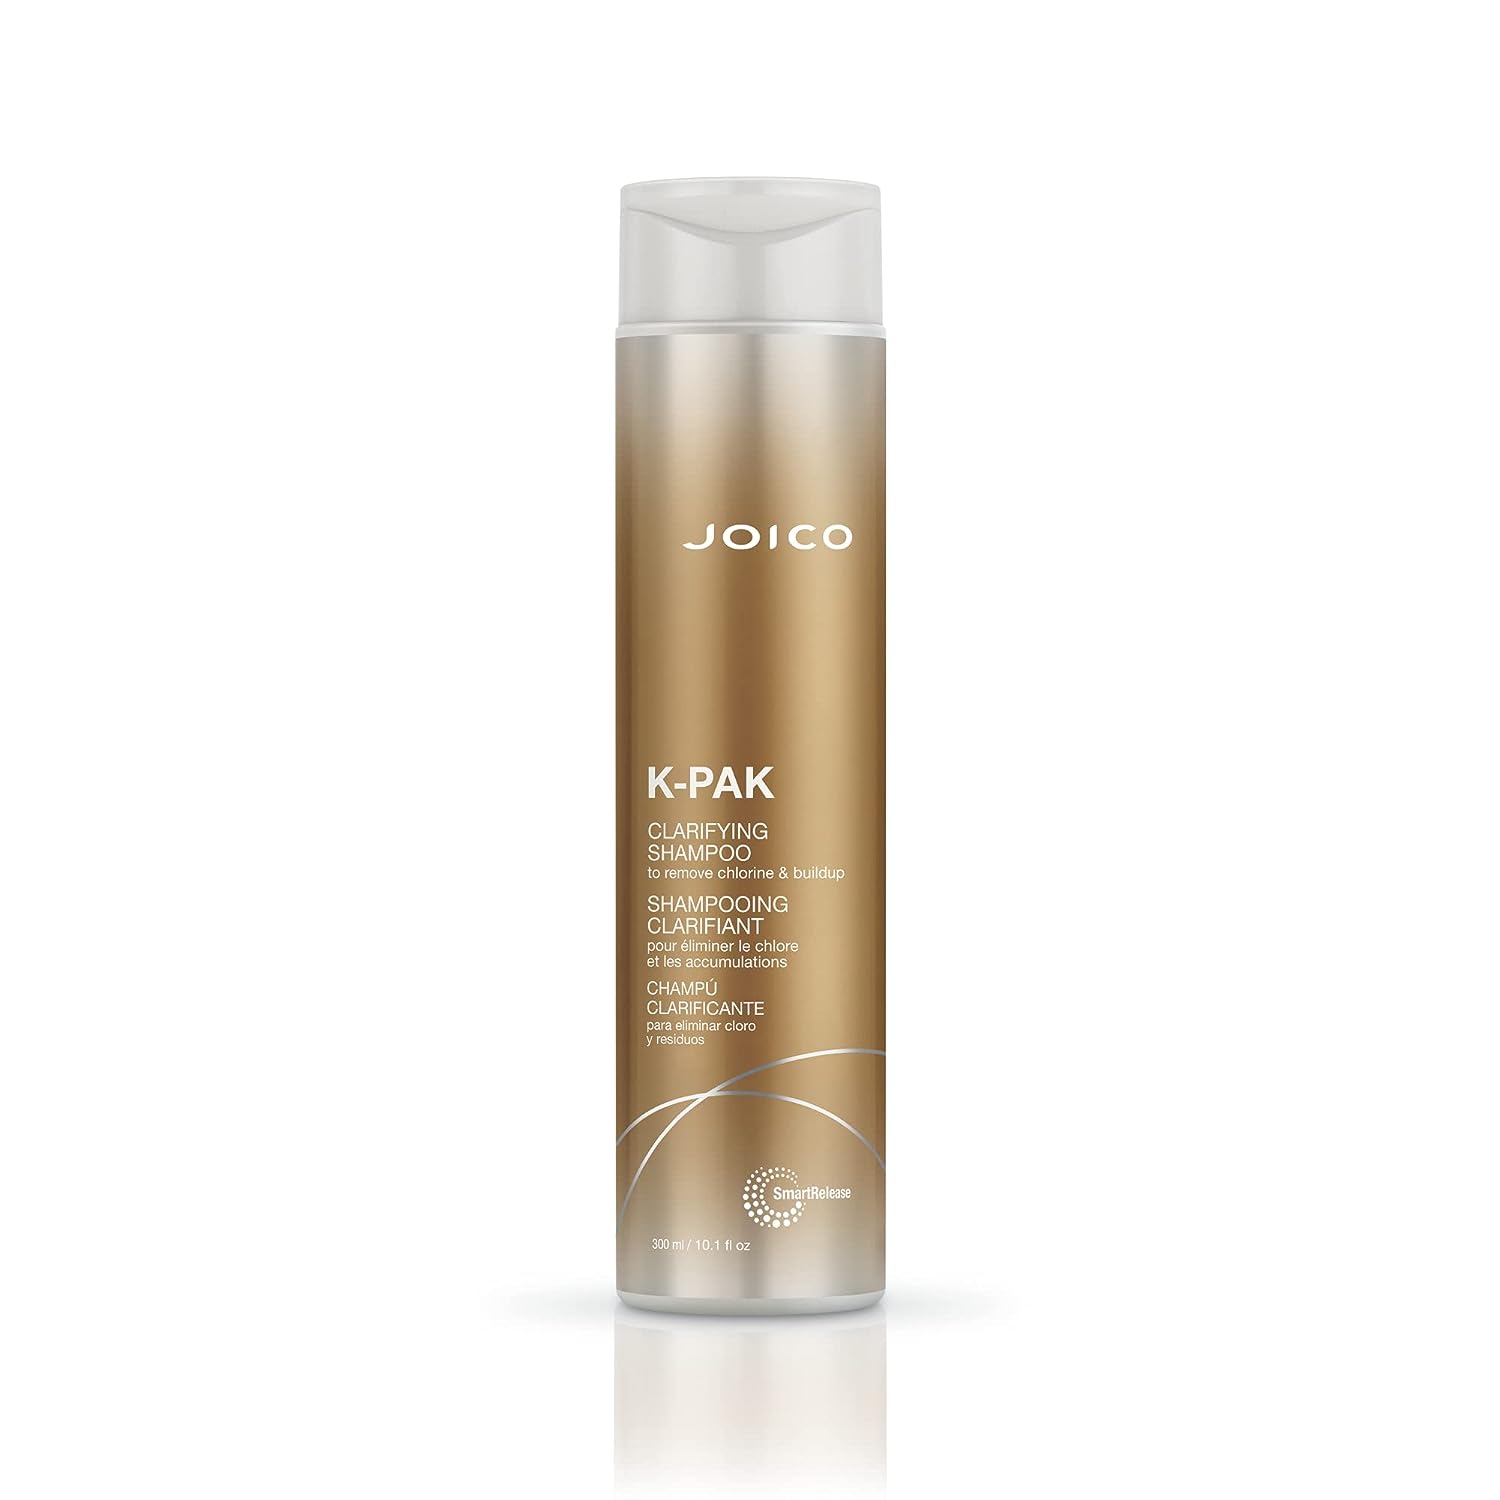 Joico K-PAK Daily Clarifying Shampoo to Remove [...]